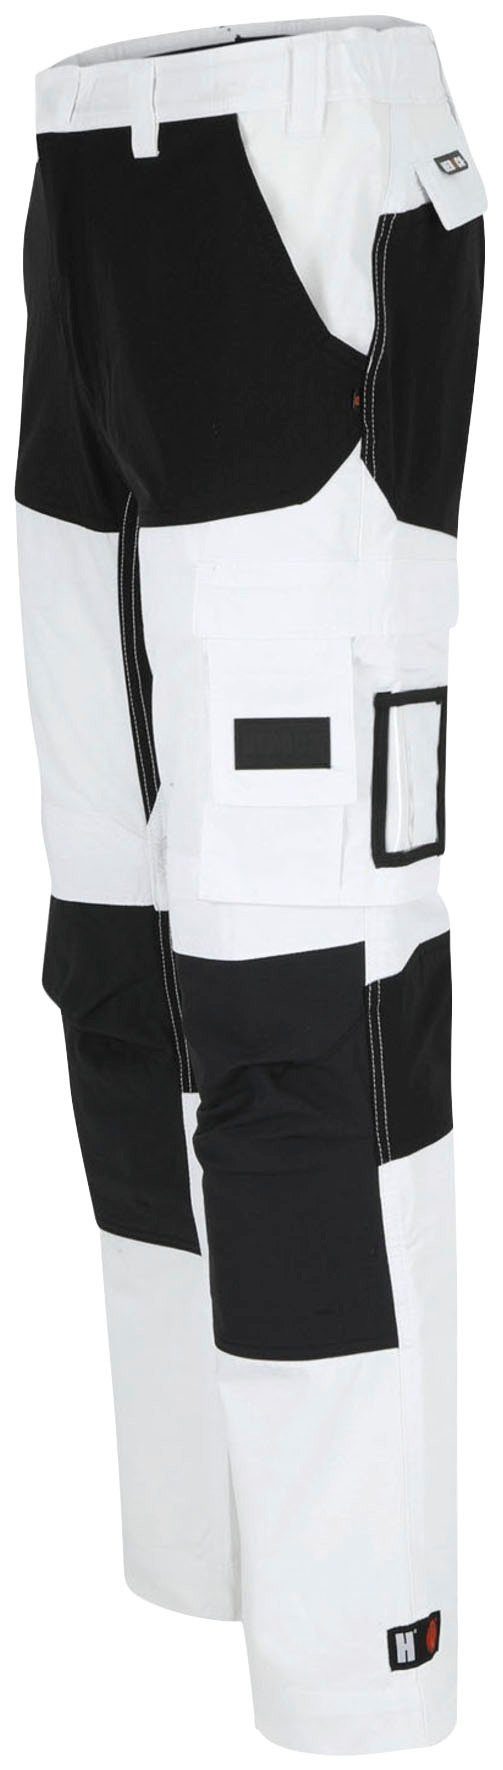 Hector Herock Arbeitshose Multi-Pocket, 4-Wege-Stretch, verdeckter Hoses verstärkte weiß Knietaschen Knopf,